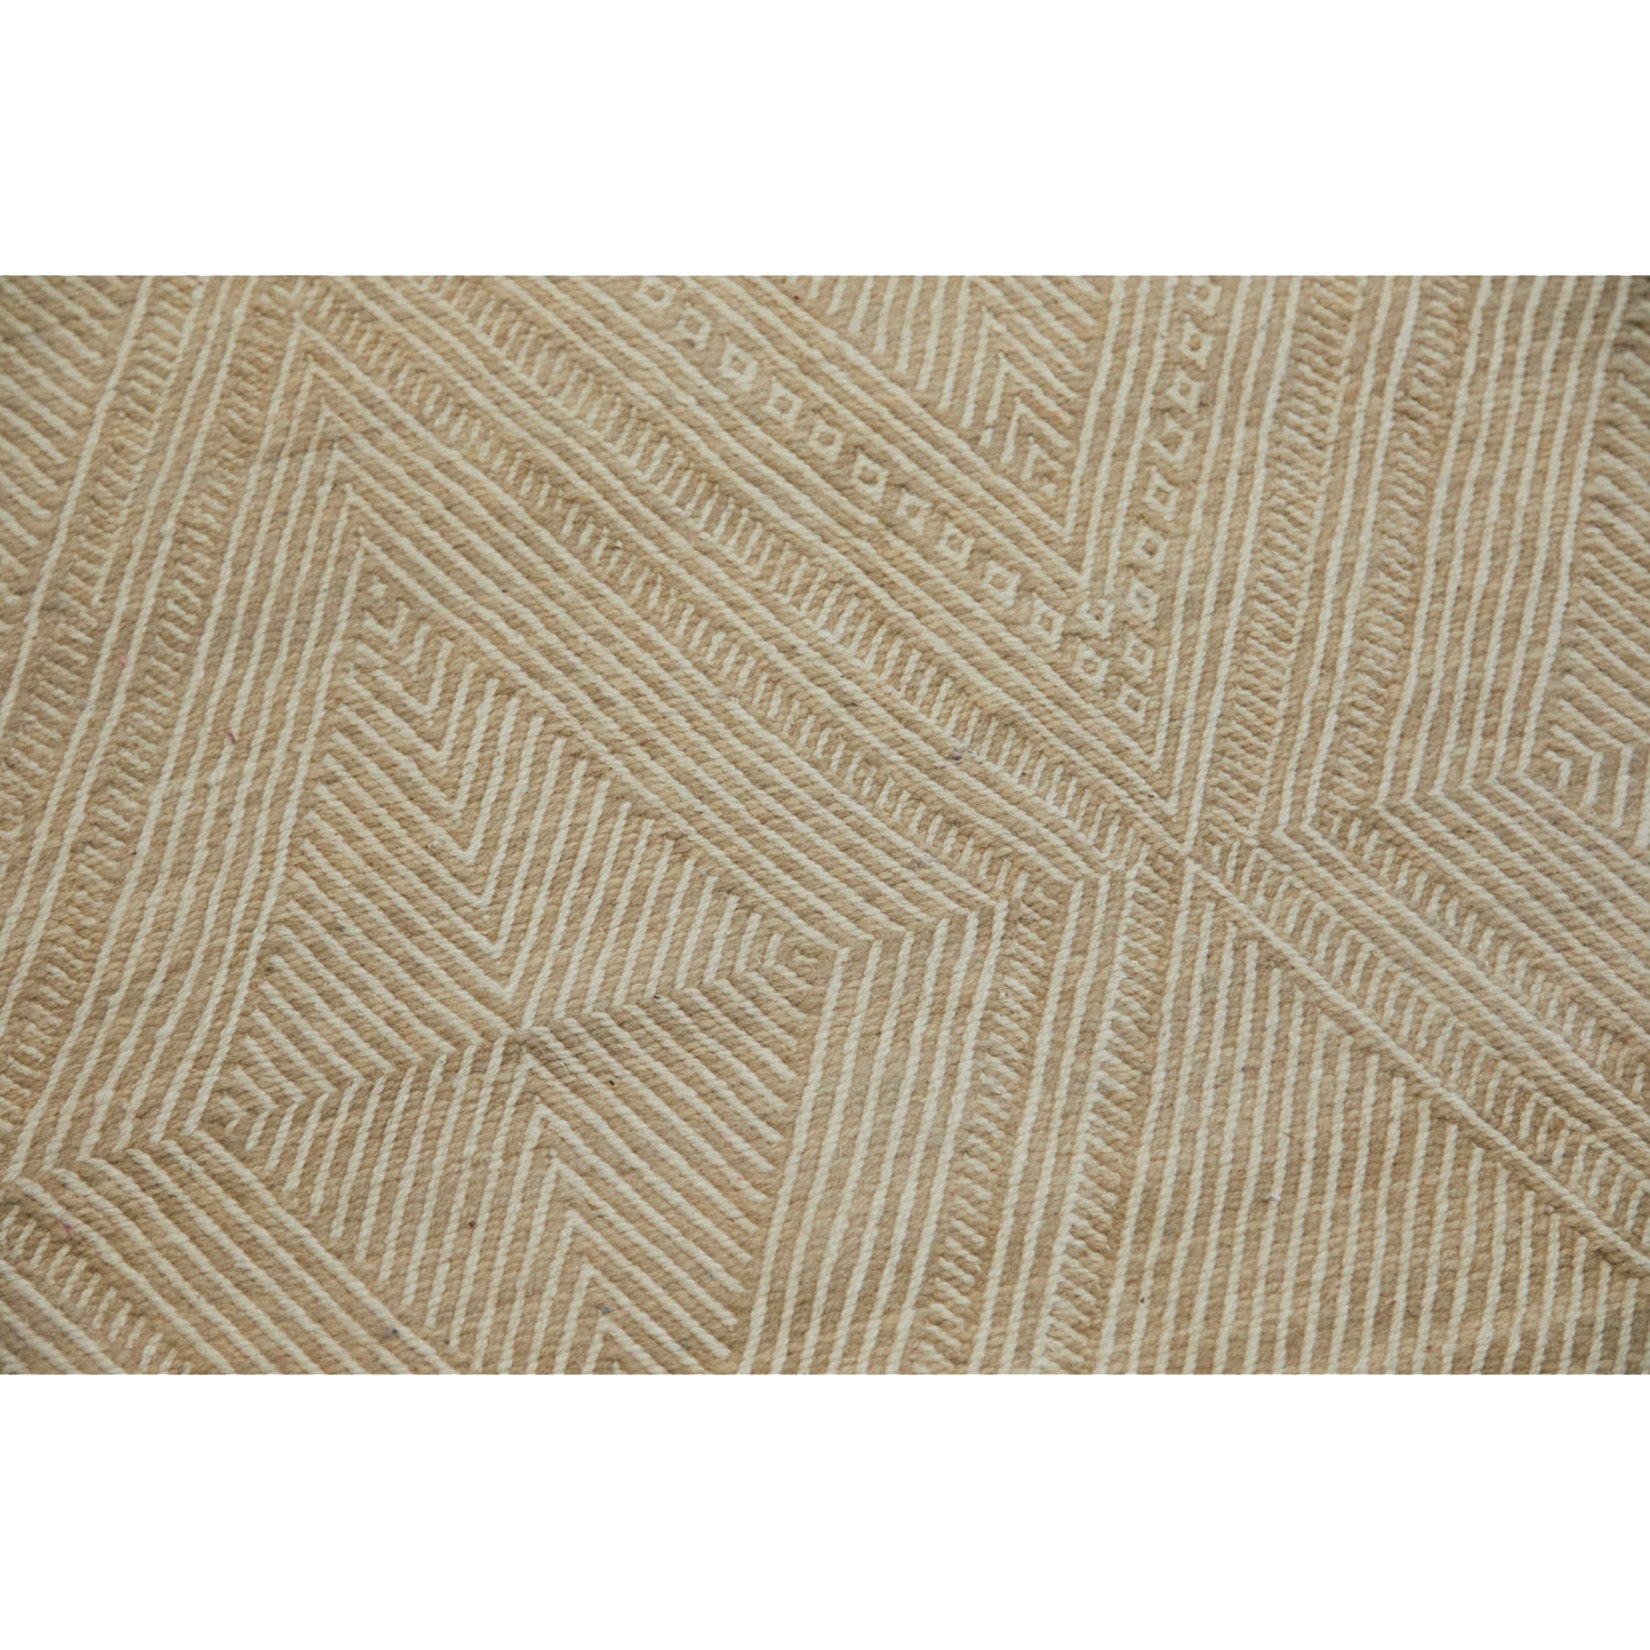 Contemporary Moroccan rug in ecru tones